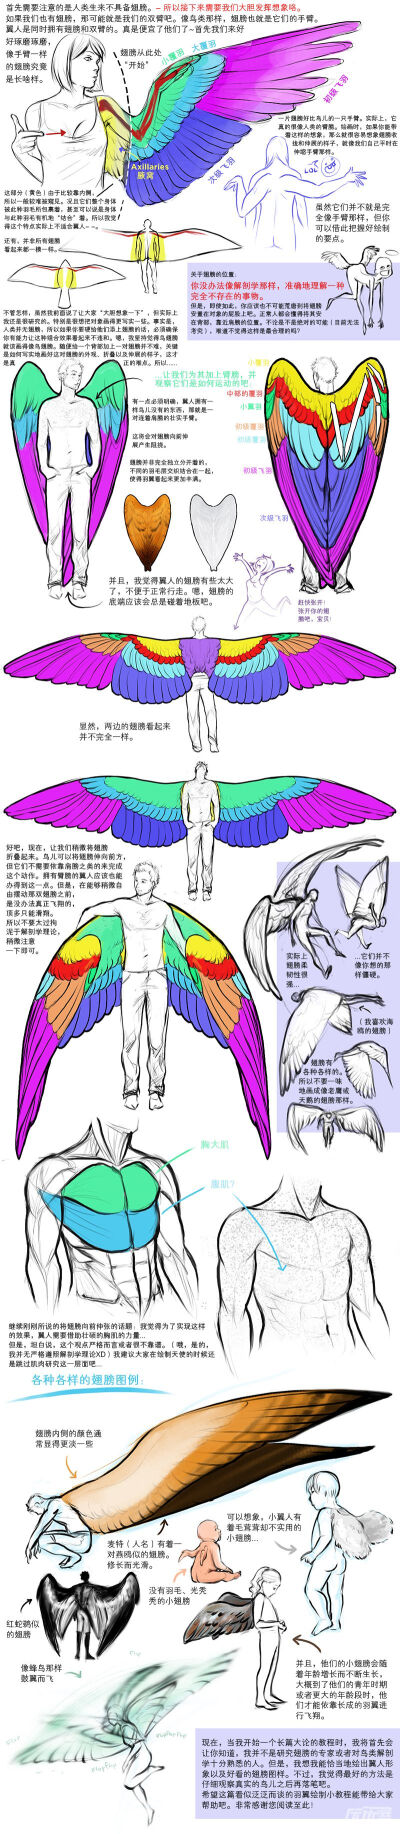 【天使之翼绘制教程】综合之前对鸟儿翅膀教程绘制的放送，大伙势必对翅膀绘画已经拥有一定程度的理解和心得！今日奉上的天使之翼，就是为了完成翅膀控们将翅膀与人体相结合的愿望~天使在人间，天使在笔下。